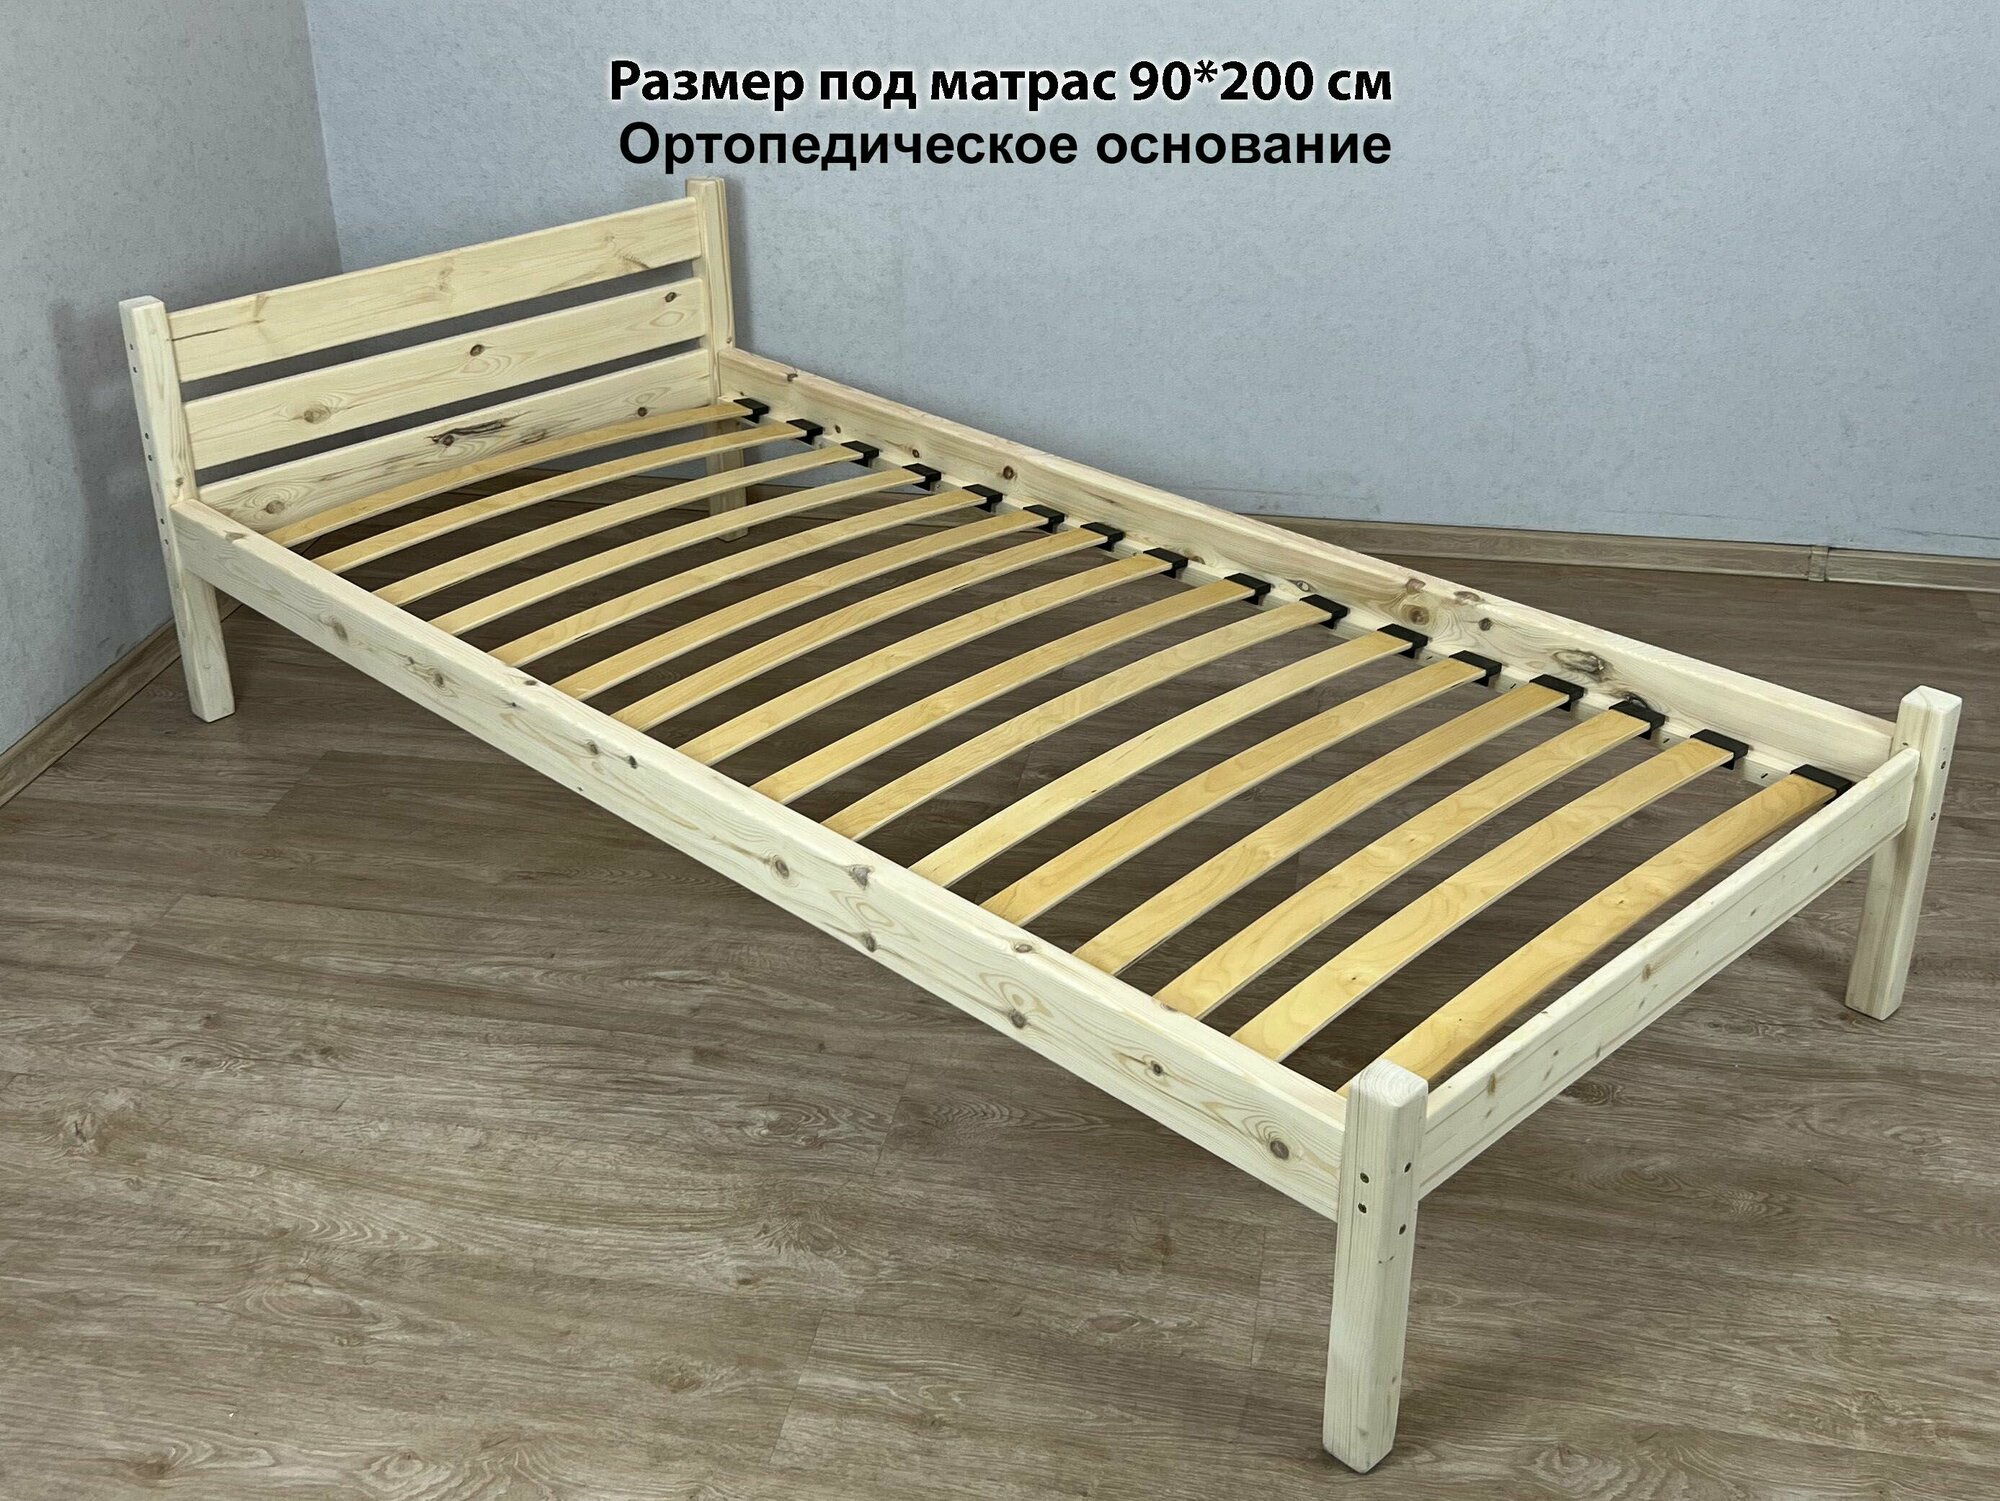 Кровать односпальная Классика из массива сосны с ортопедическим основанием, без шлифовки и покрытия, 90х200 см